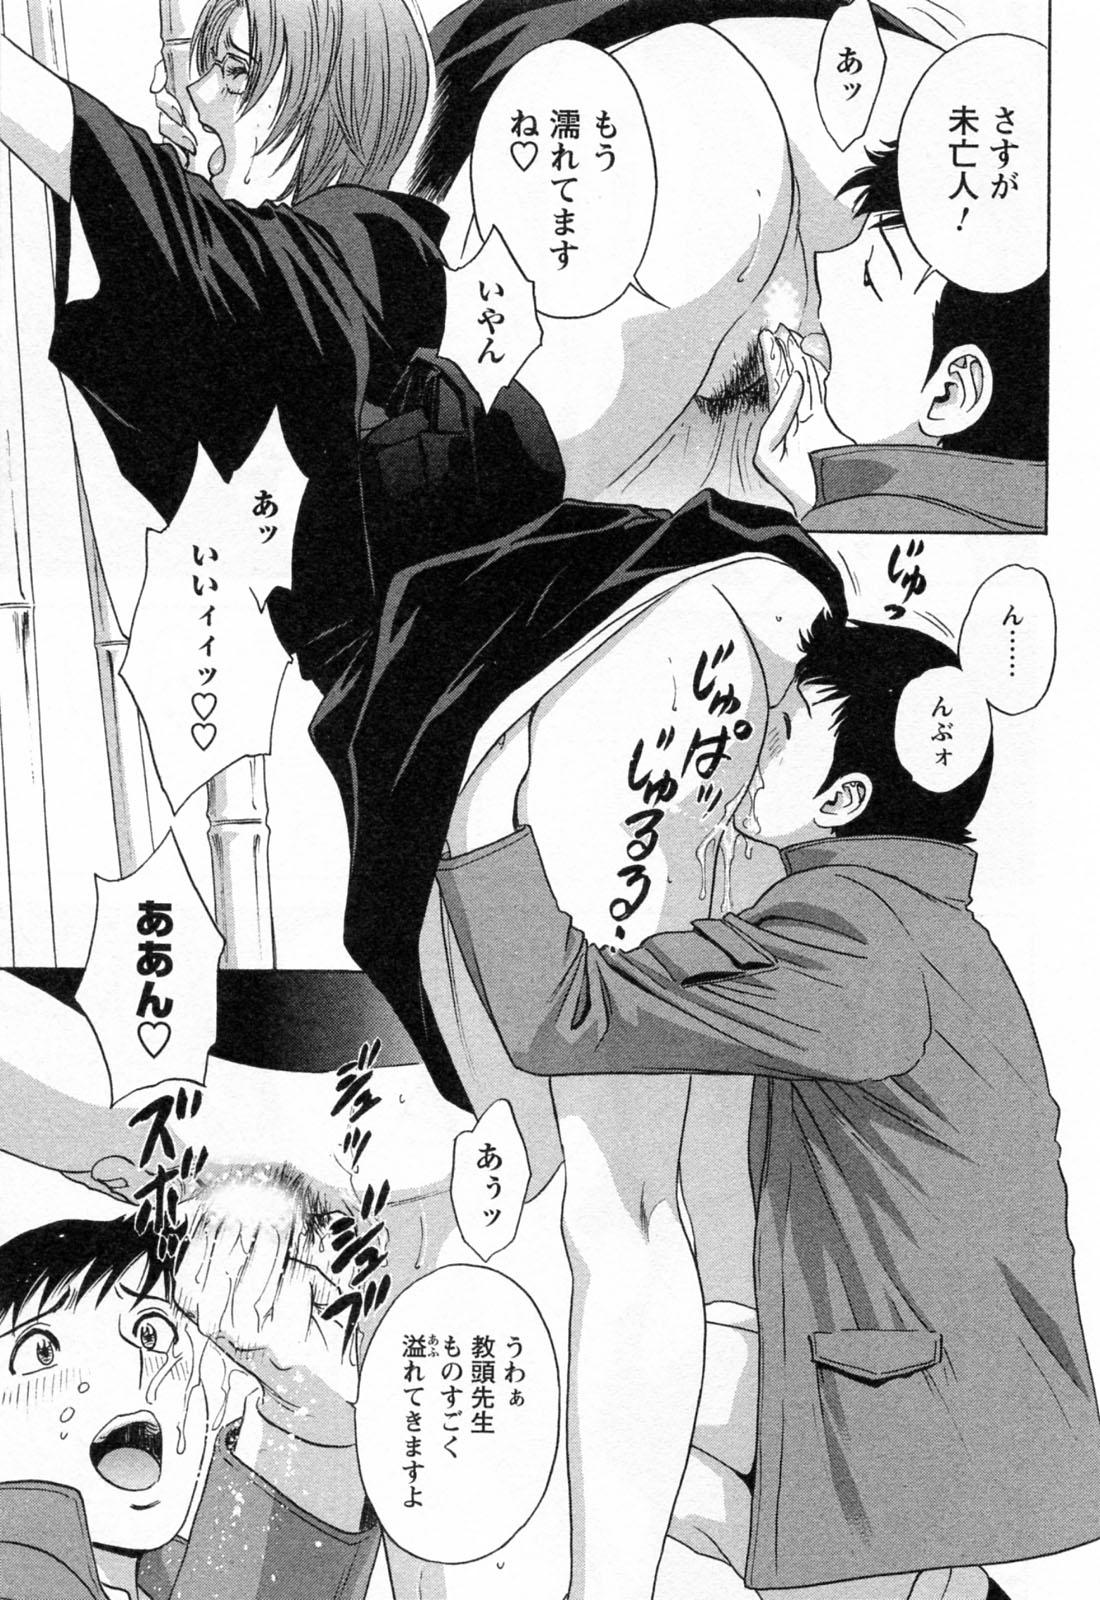 [Hidemaru] Mo-Retsu! Boin Sensei (Boing Boing Teacher) Vol.4 184